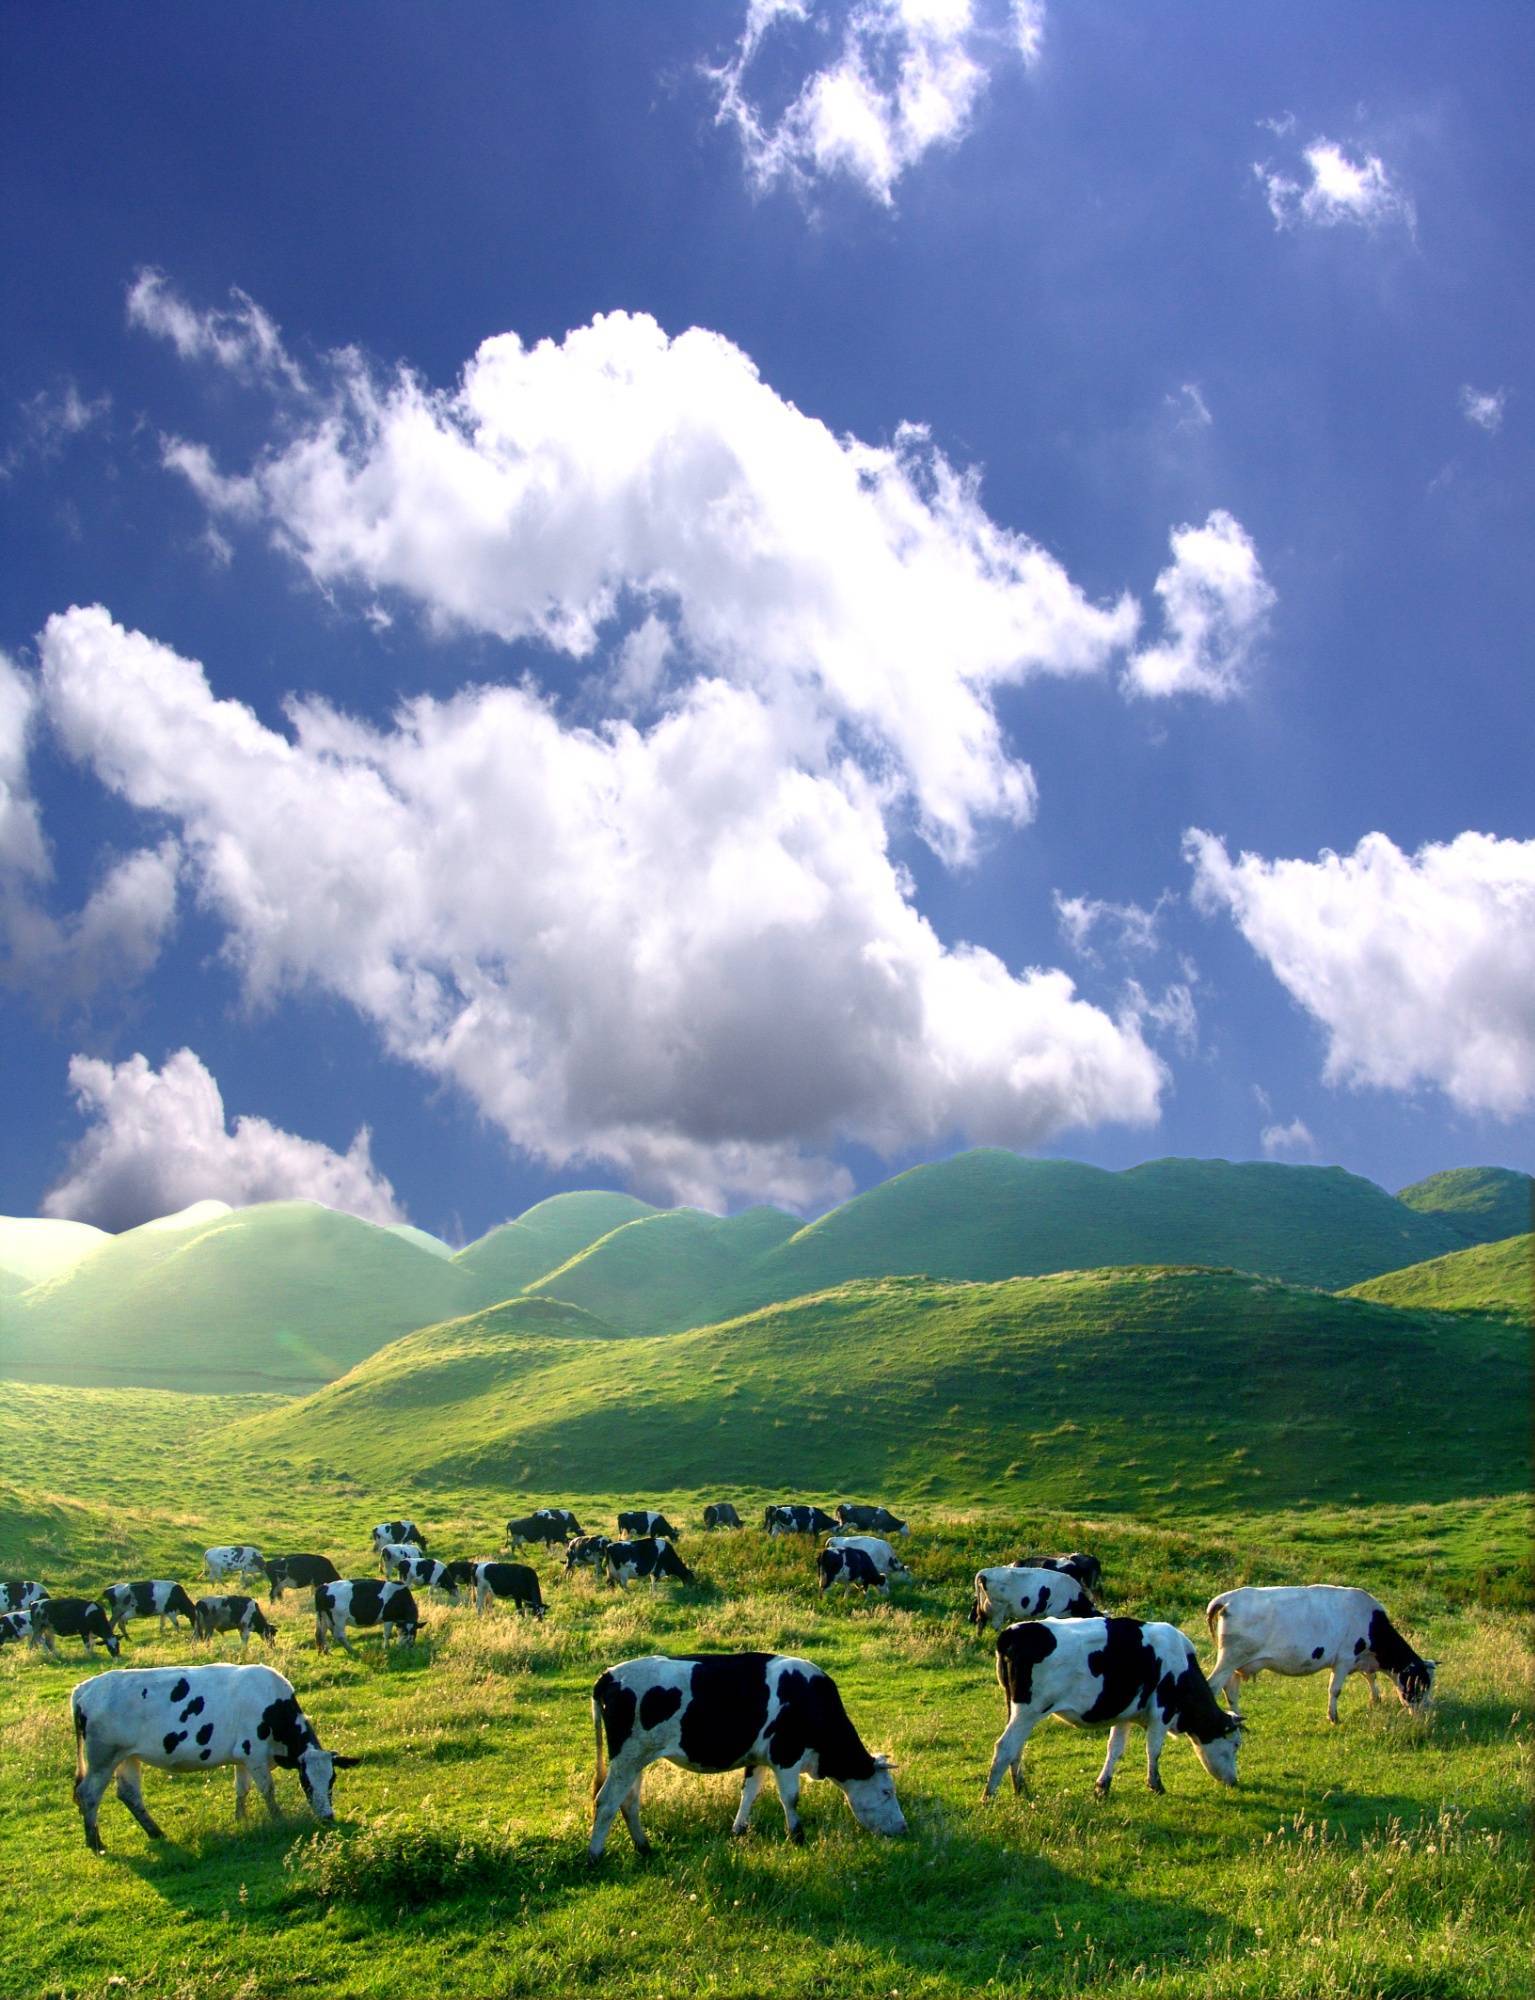 湖南城步一企业获中国牧场草地养护服务企业一级资质认证